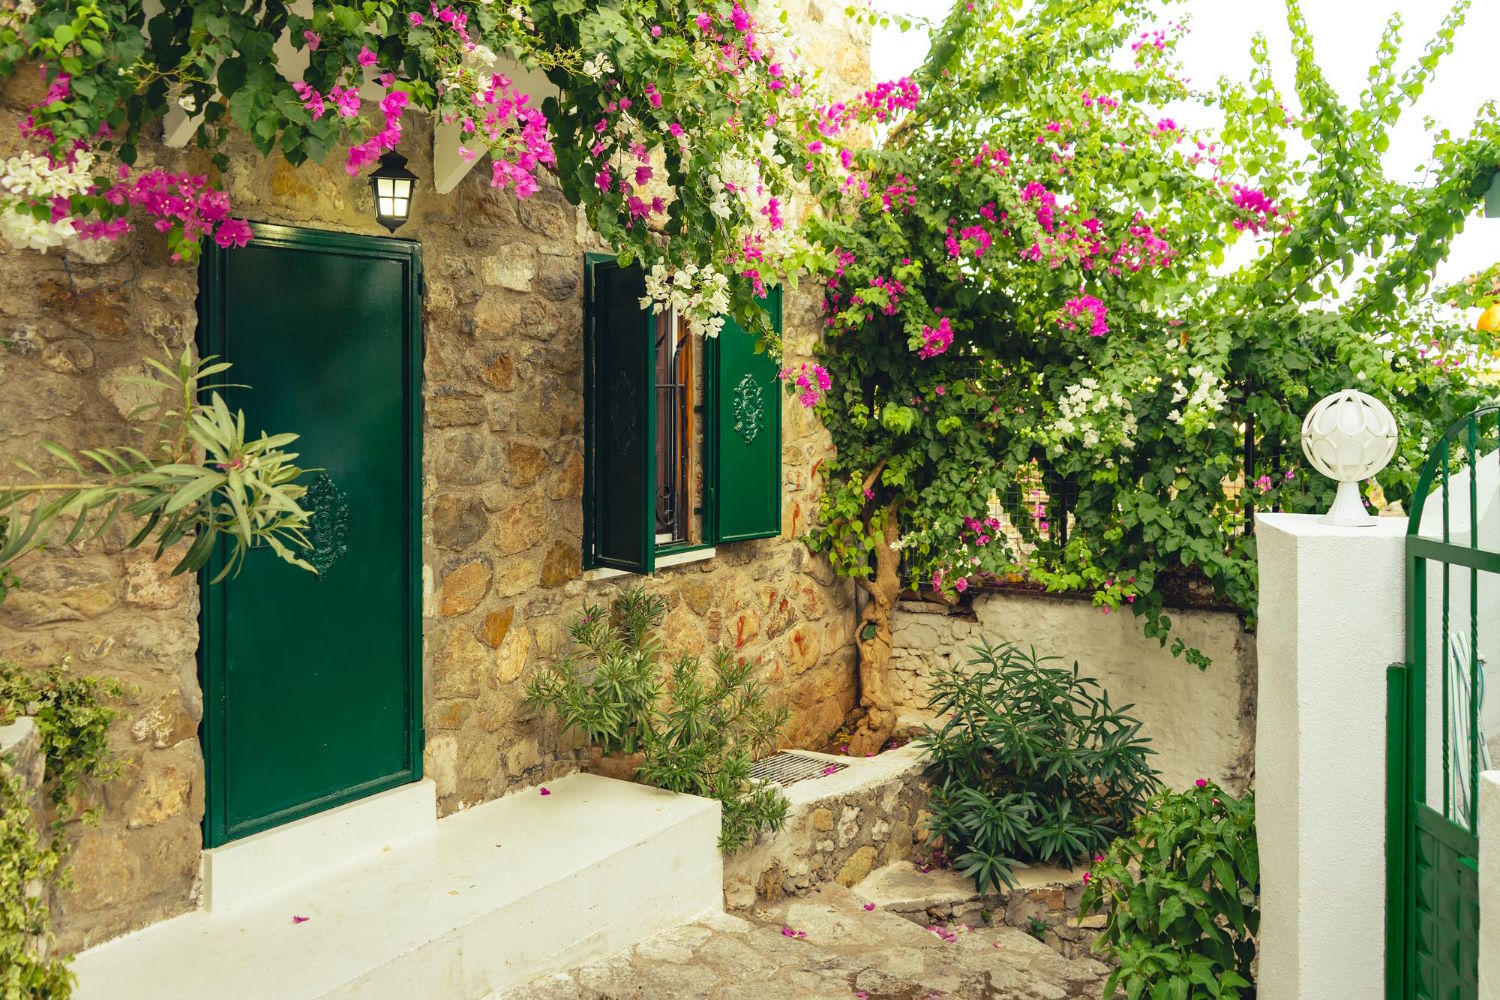 Hiszpania – Idealne miejsce do zamieszkania: Jak zrealizować marzenie o posiadaniu własnego domu?